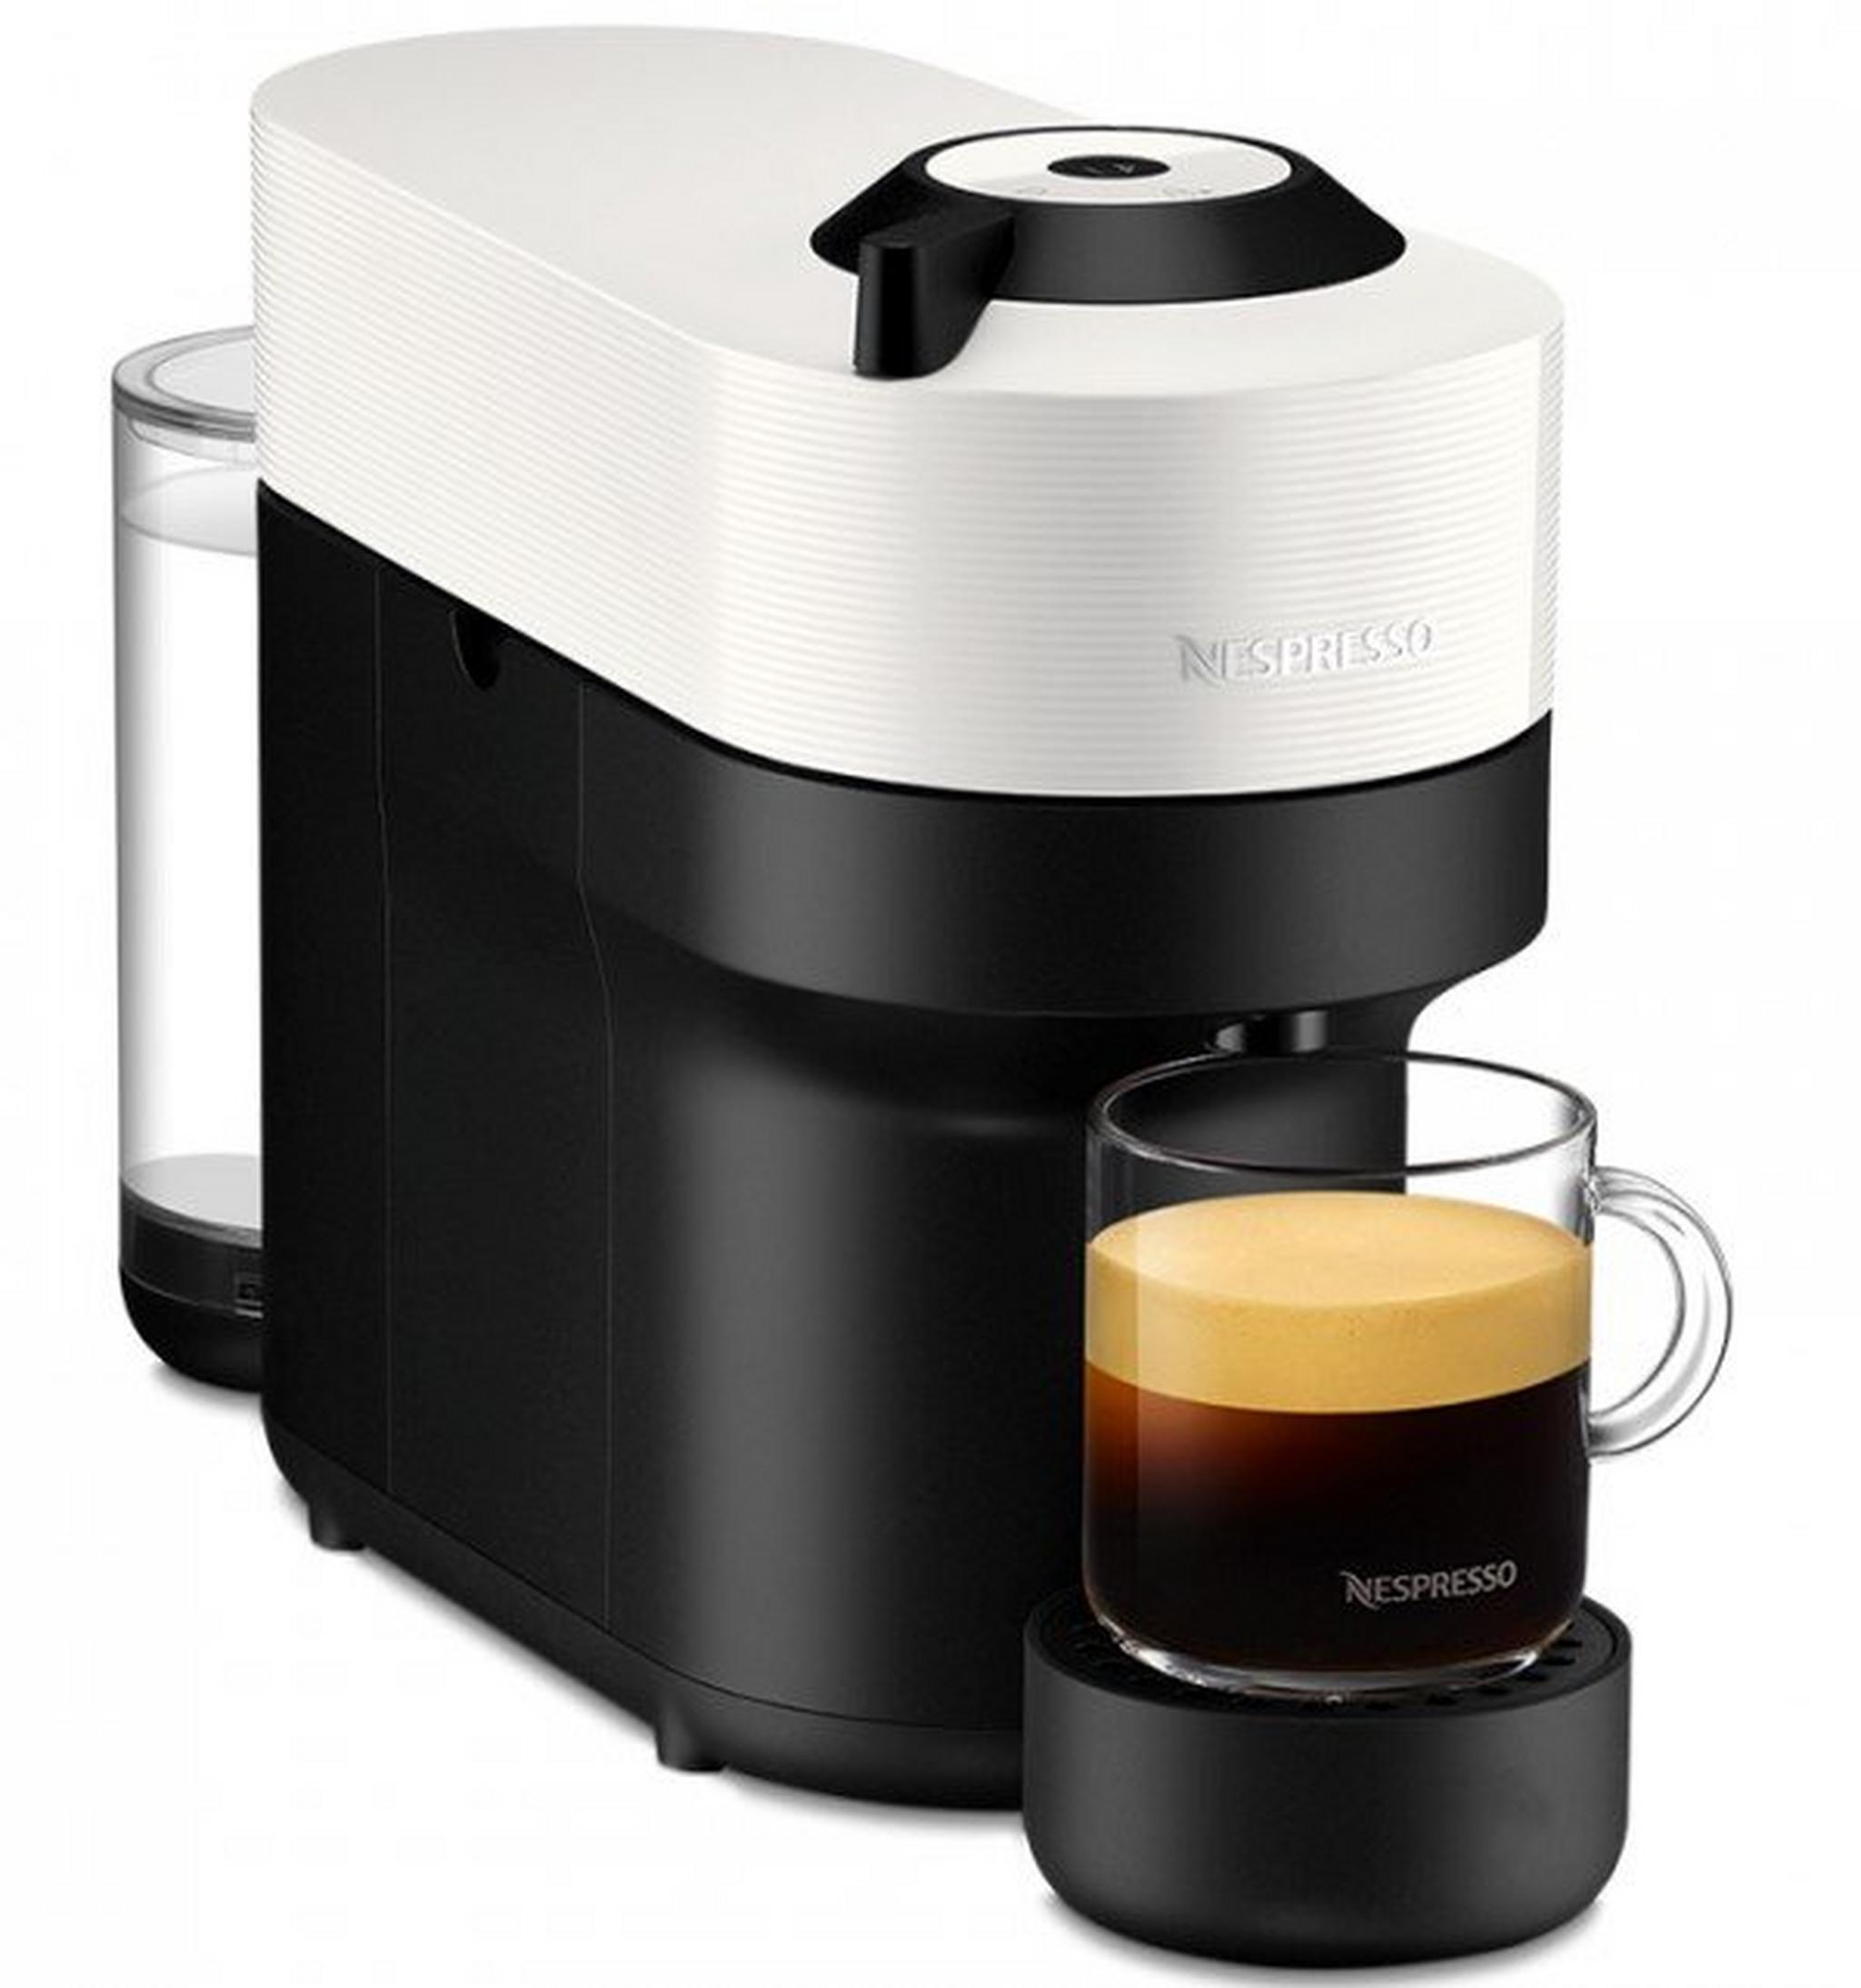 ماكينة تحضير القهوة فيرتو بوب من نسبريسو، قدرة 1260 واط، سعة 0.6 لتر، GCV2-GB-WH-NE – ابيض جوز الهند